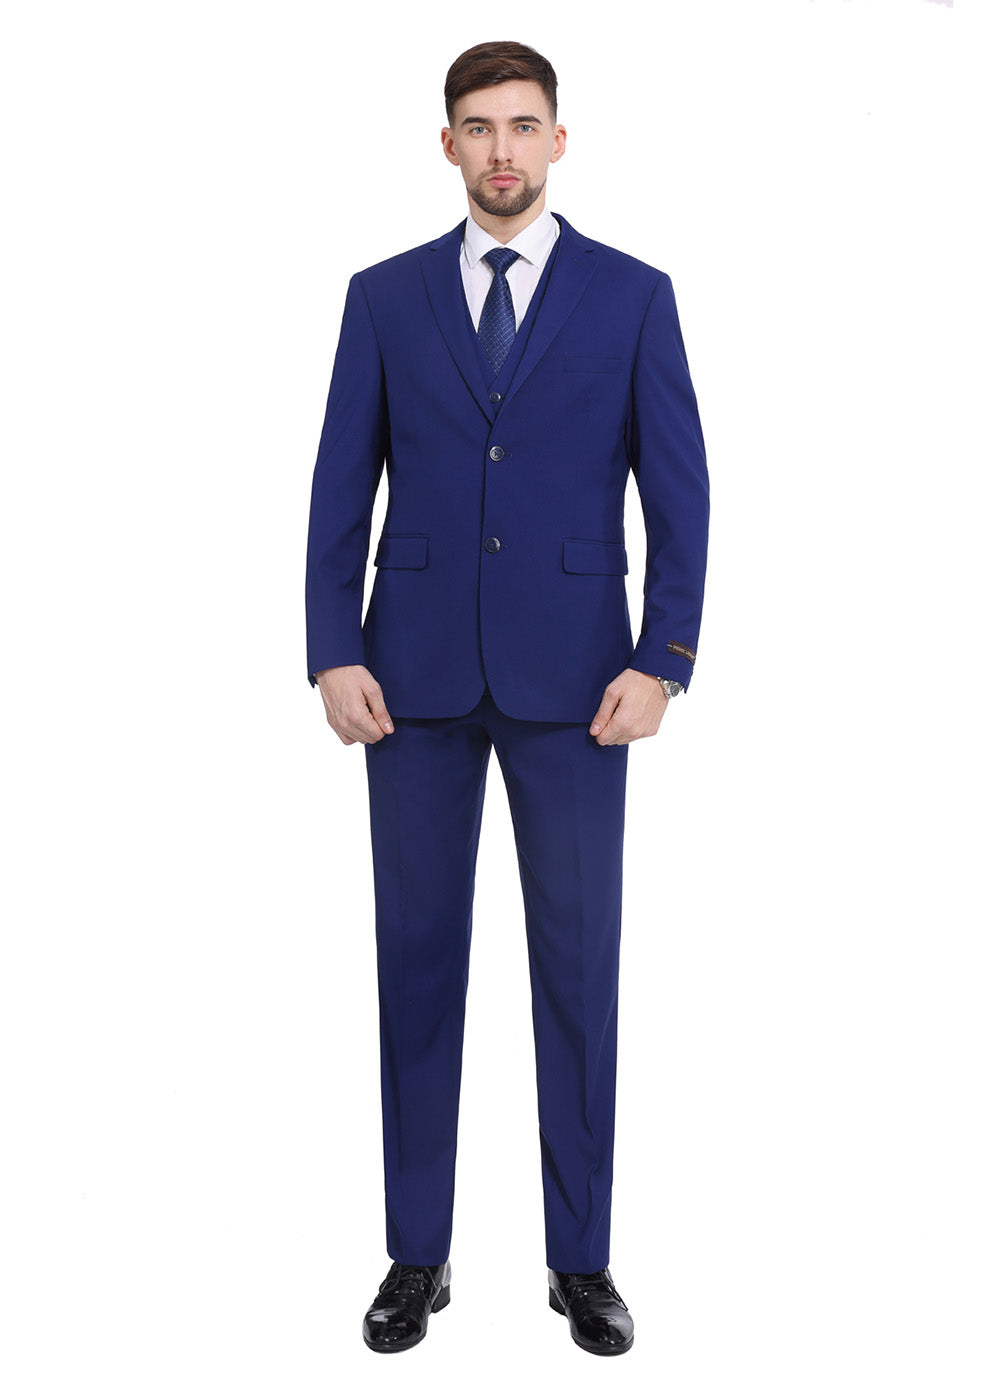 3-Piece Suit Formal Wear Mens Business Suits, Size: M-L-XL at Rs